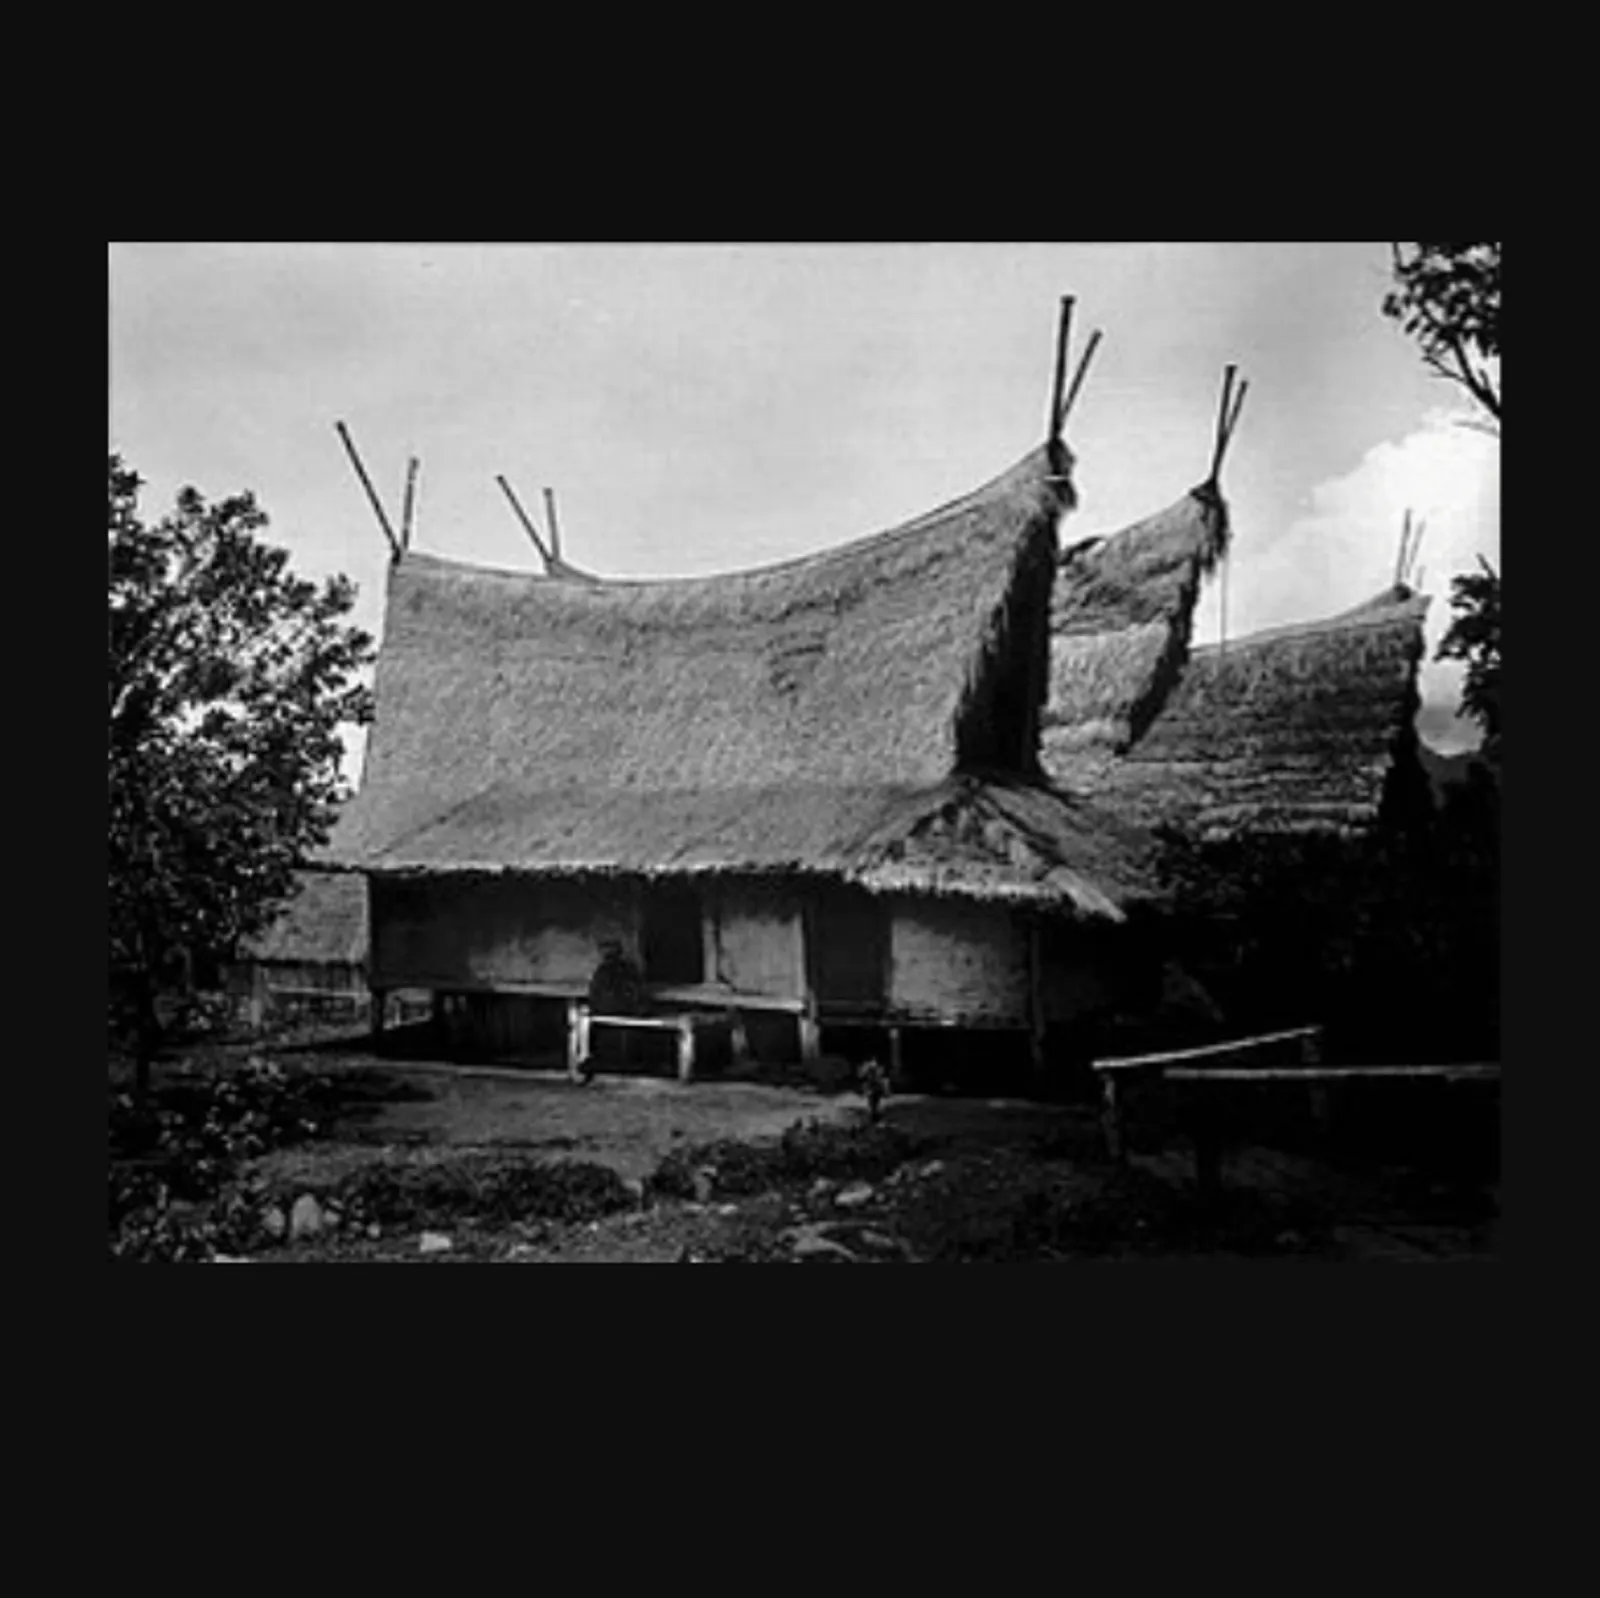 Jarang Diketahui, Ini 7 Rumah Adat Suku Sunda yang Unik